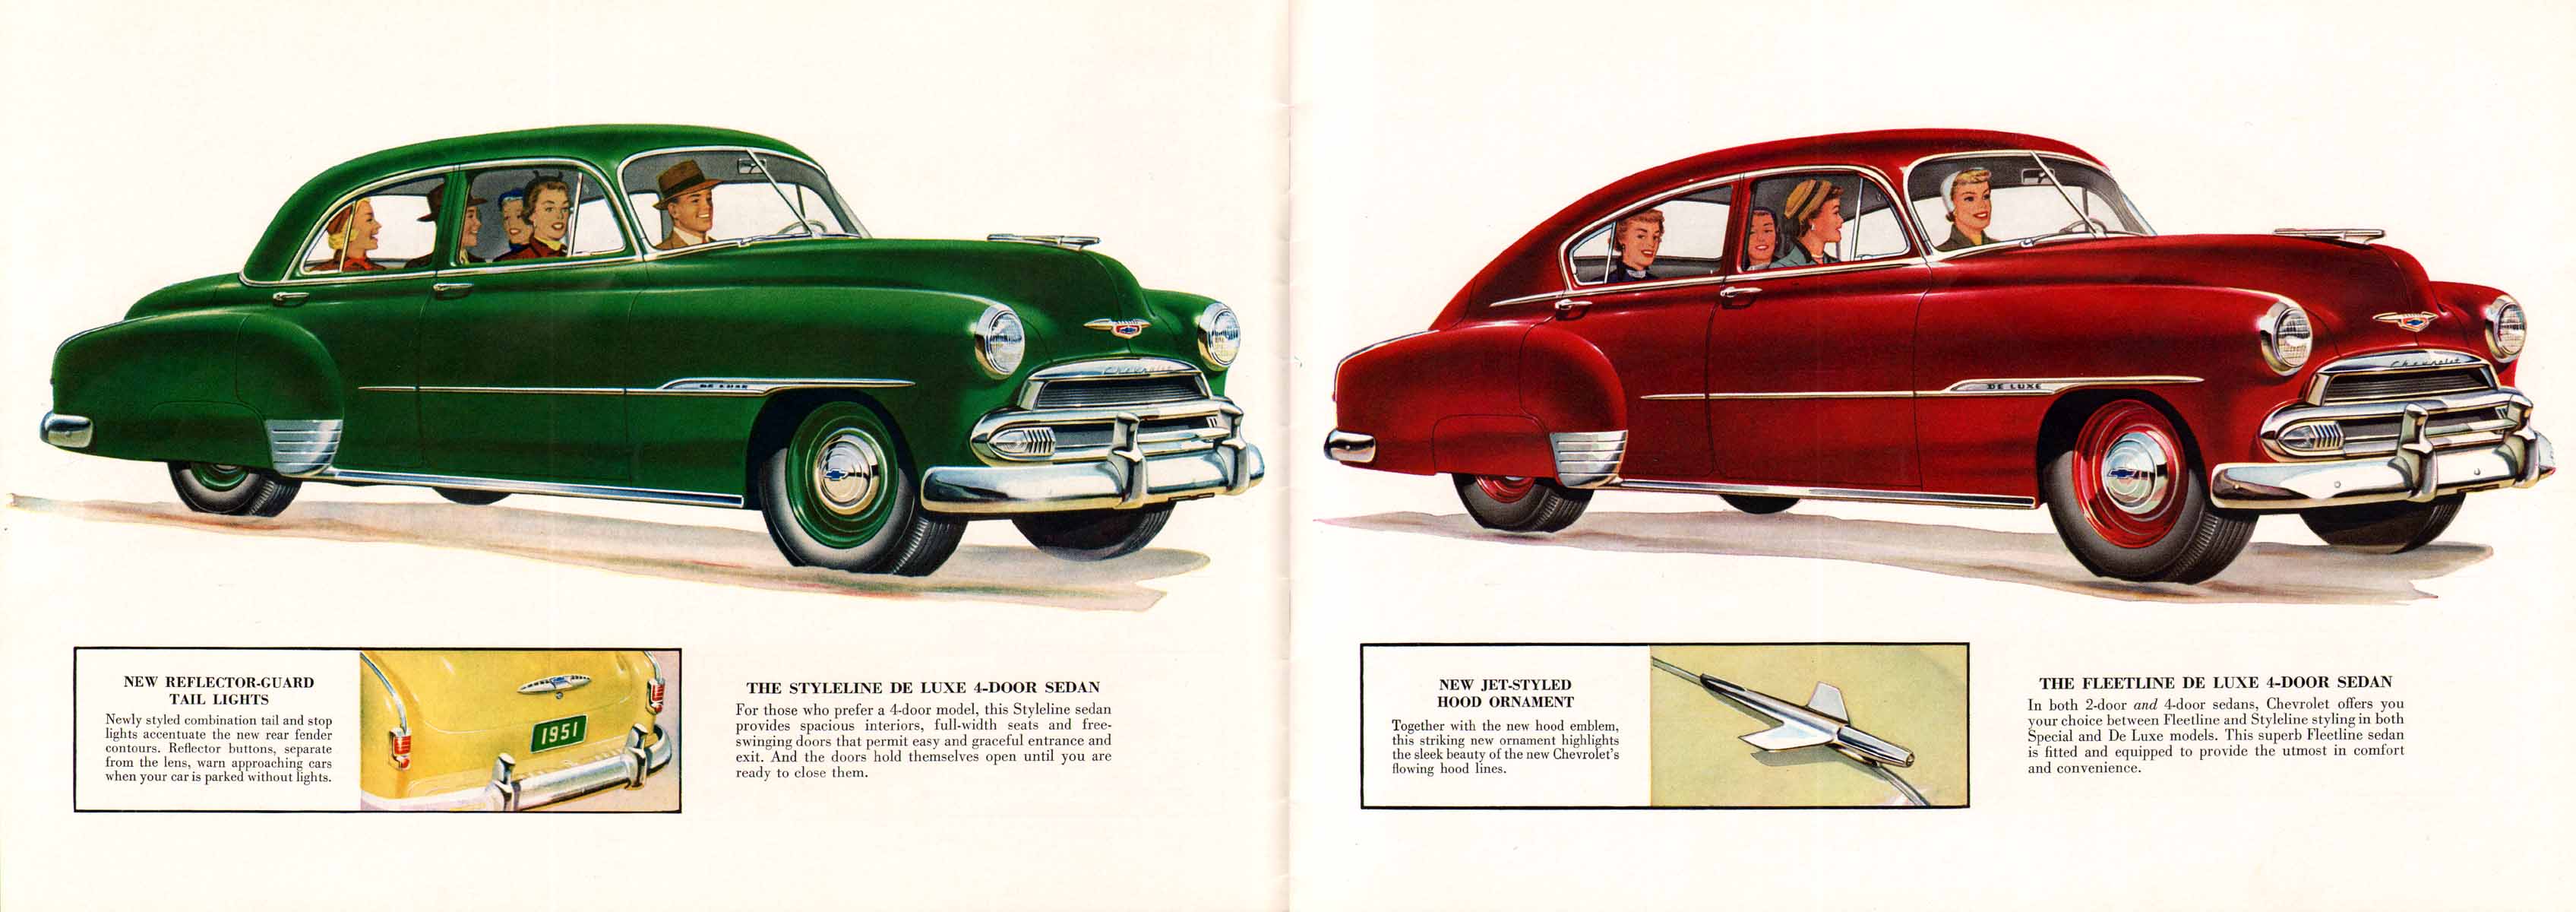 1951_Chevrolet_Full_Line-04-05